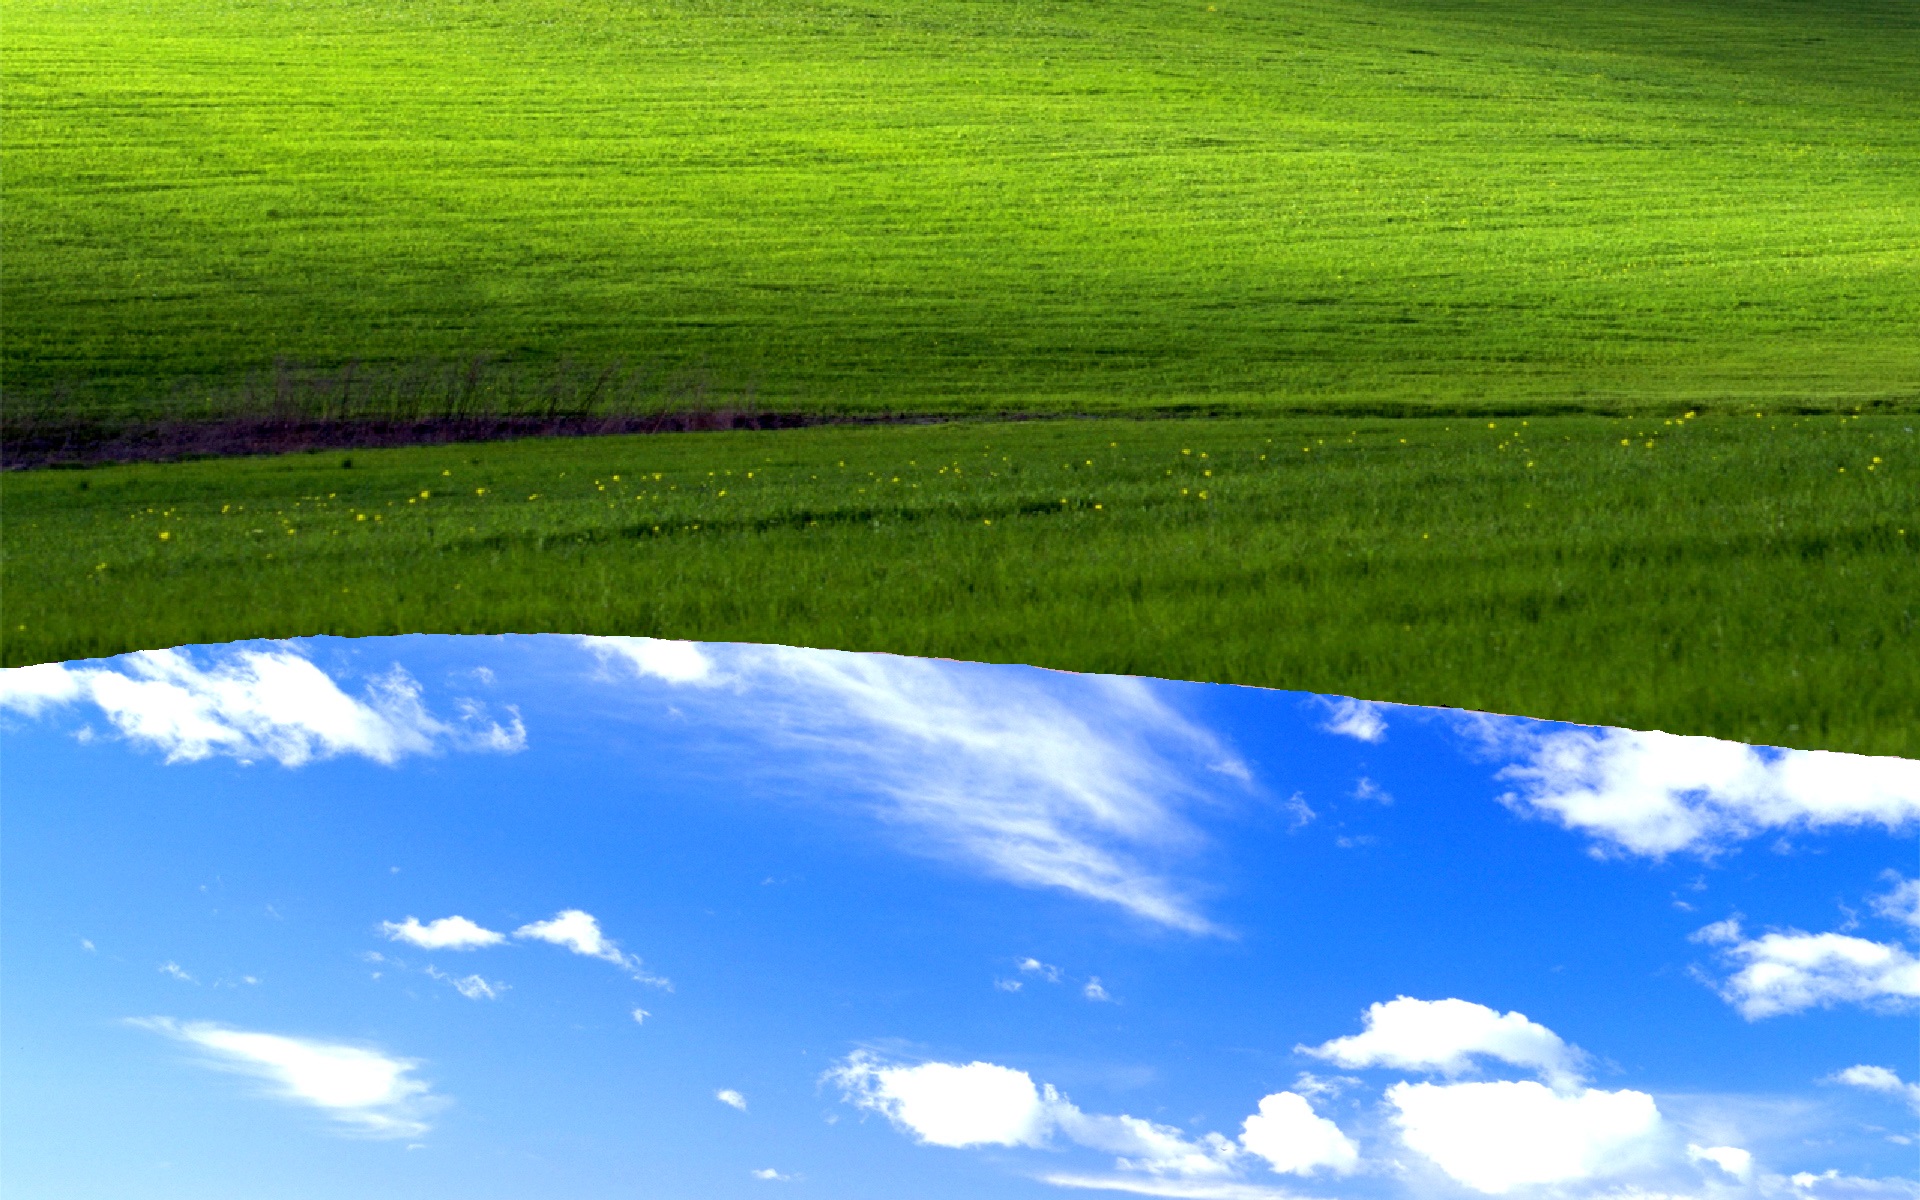 Bliss Grassland Green Sky Nature Field Grass Meadow - Windows Xp Wallpaper 2017 - HD Wallpaper 